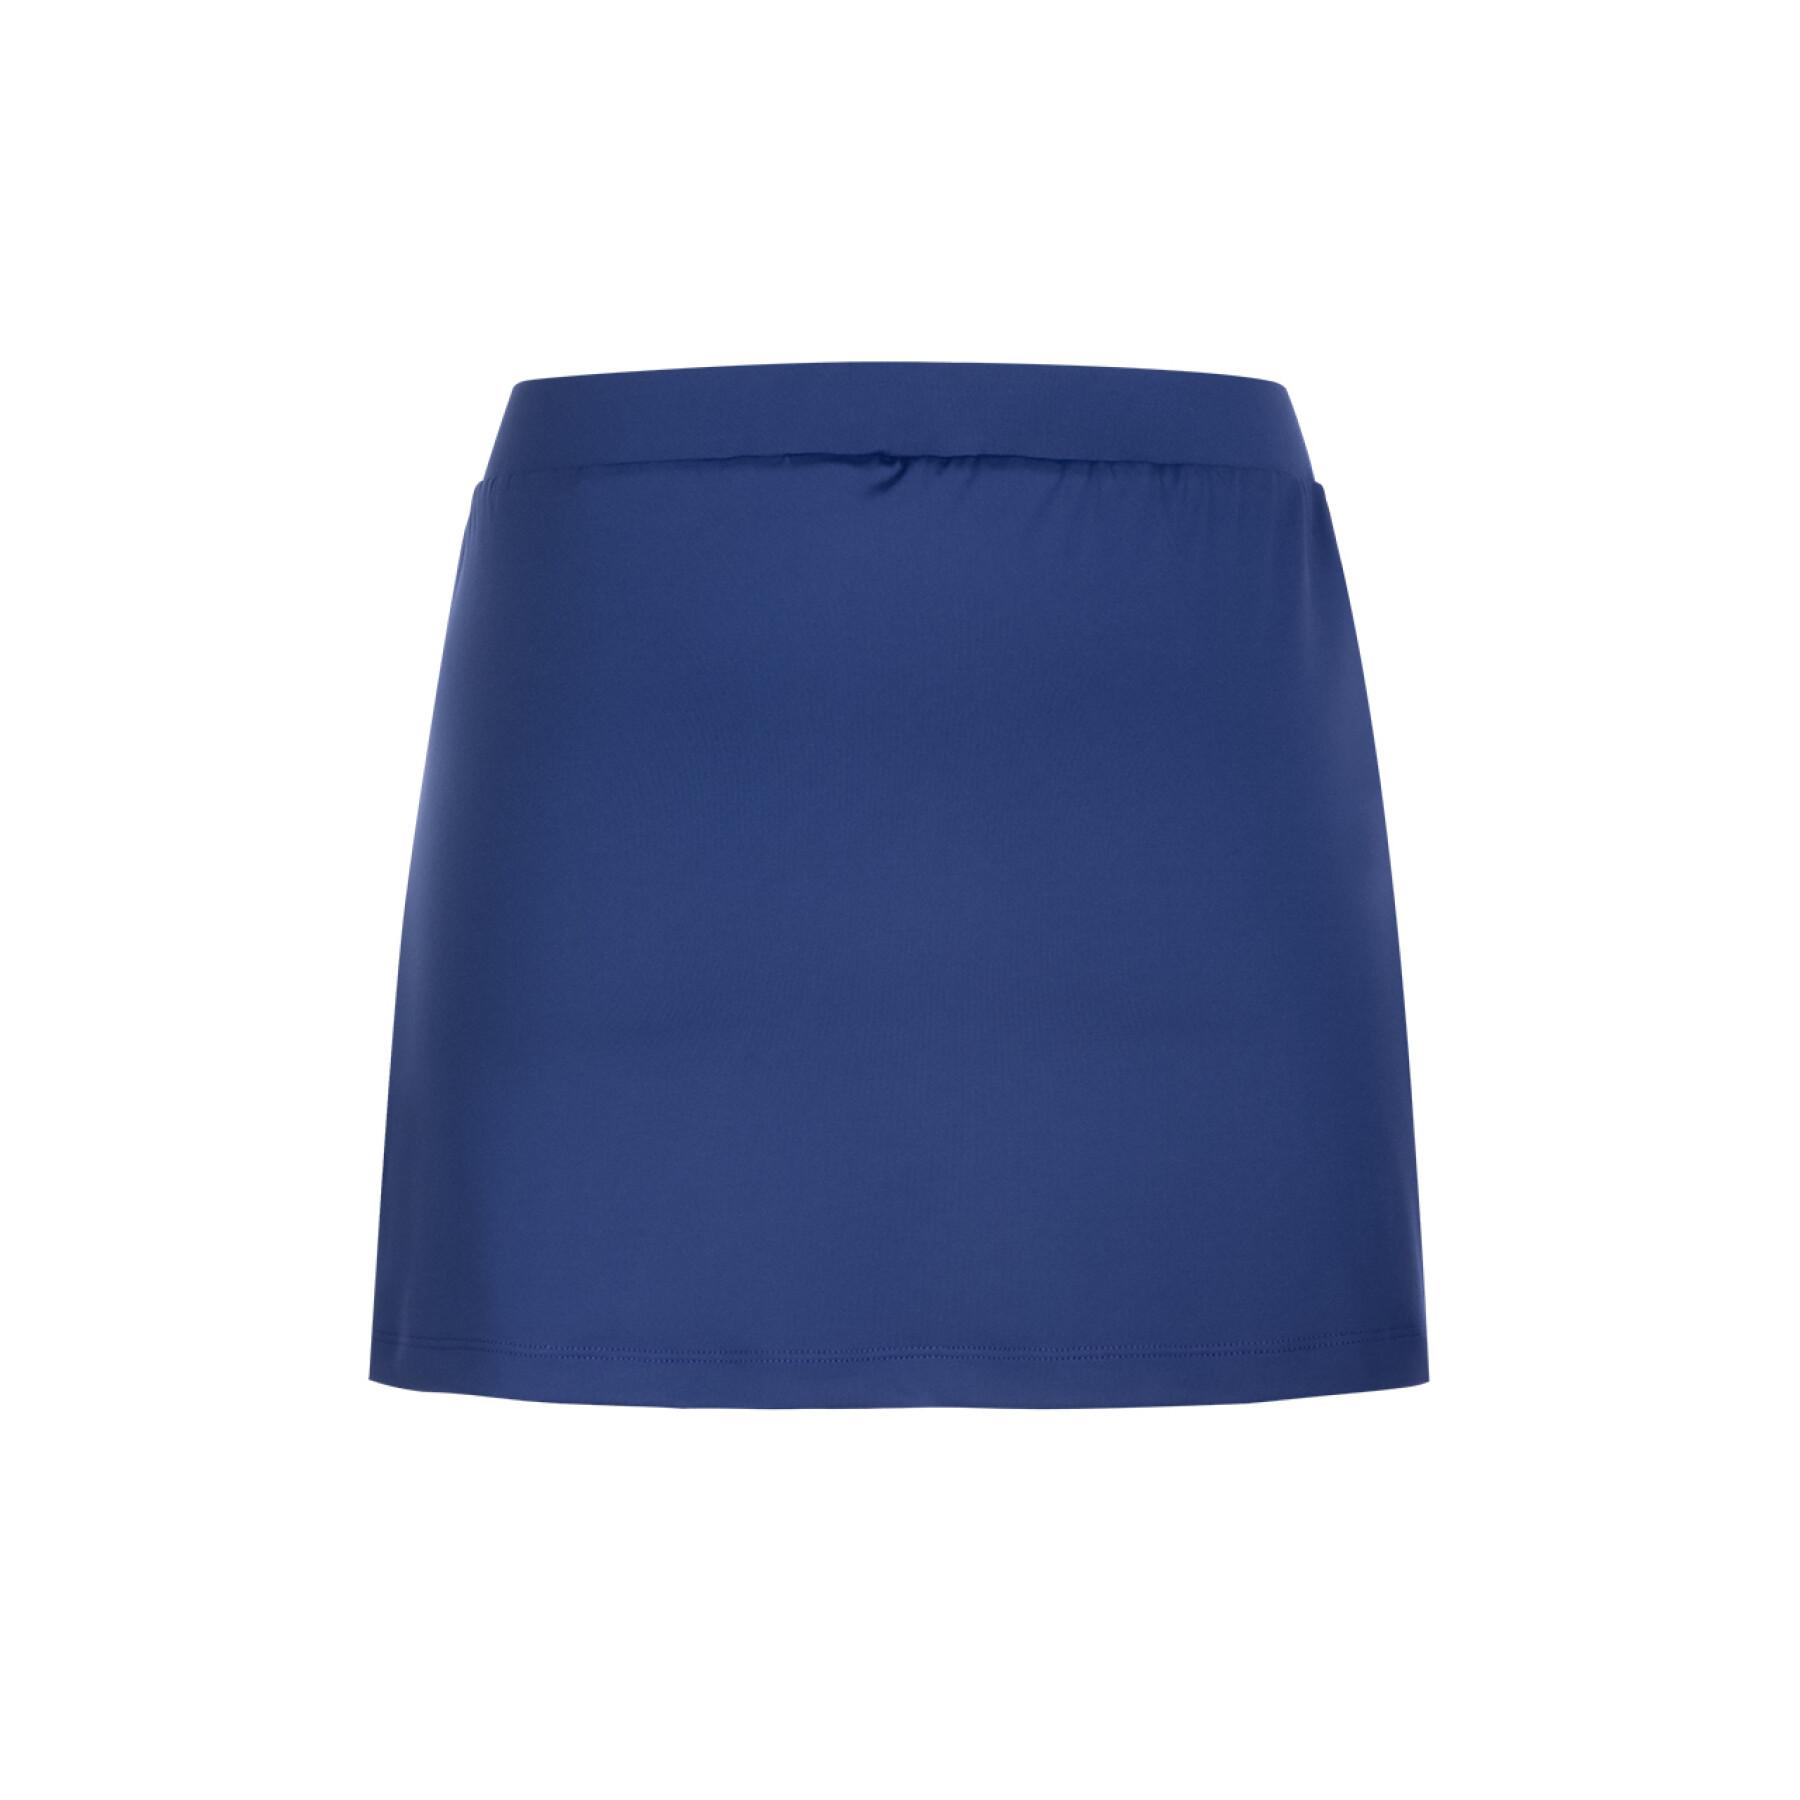 Women's skirt-short Donic Irion